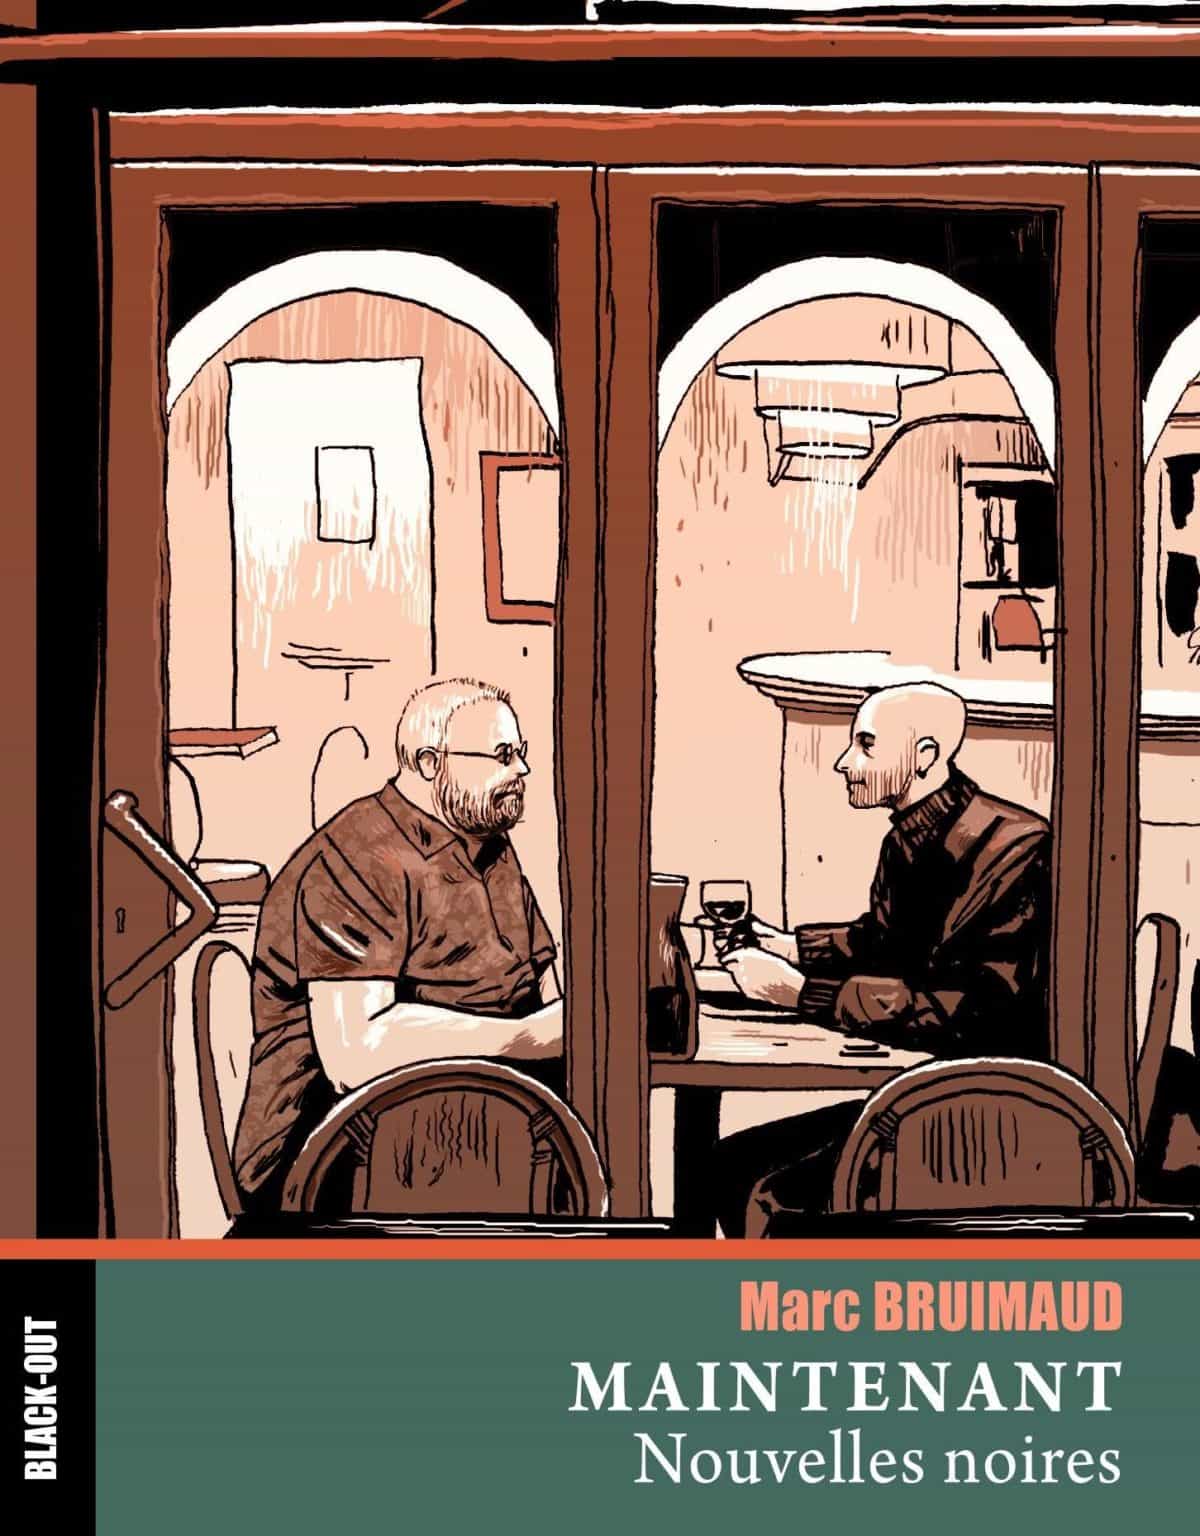 Couverture du livre Maintenant, de Marc Bruimaud